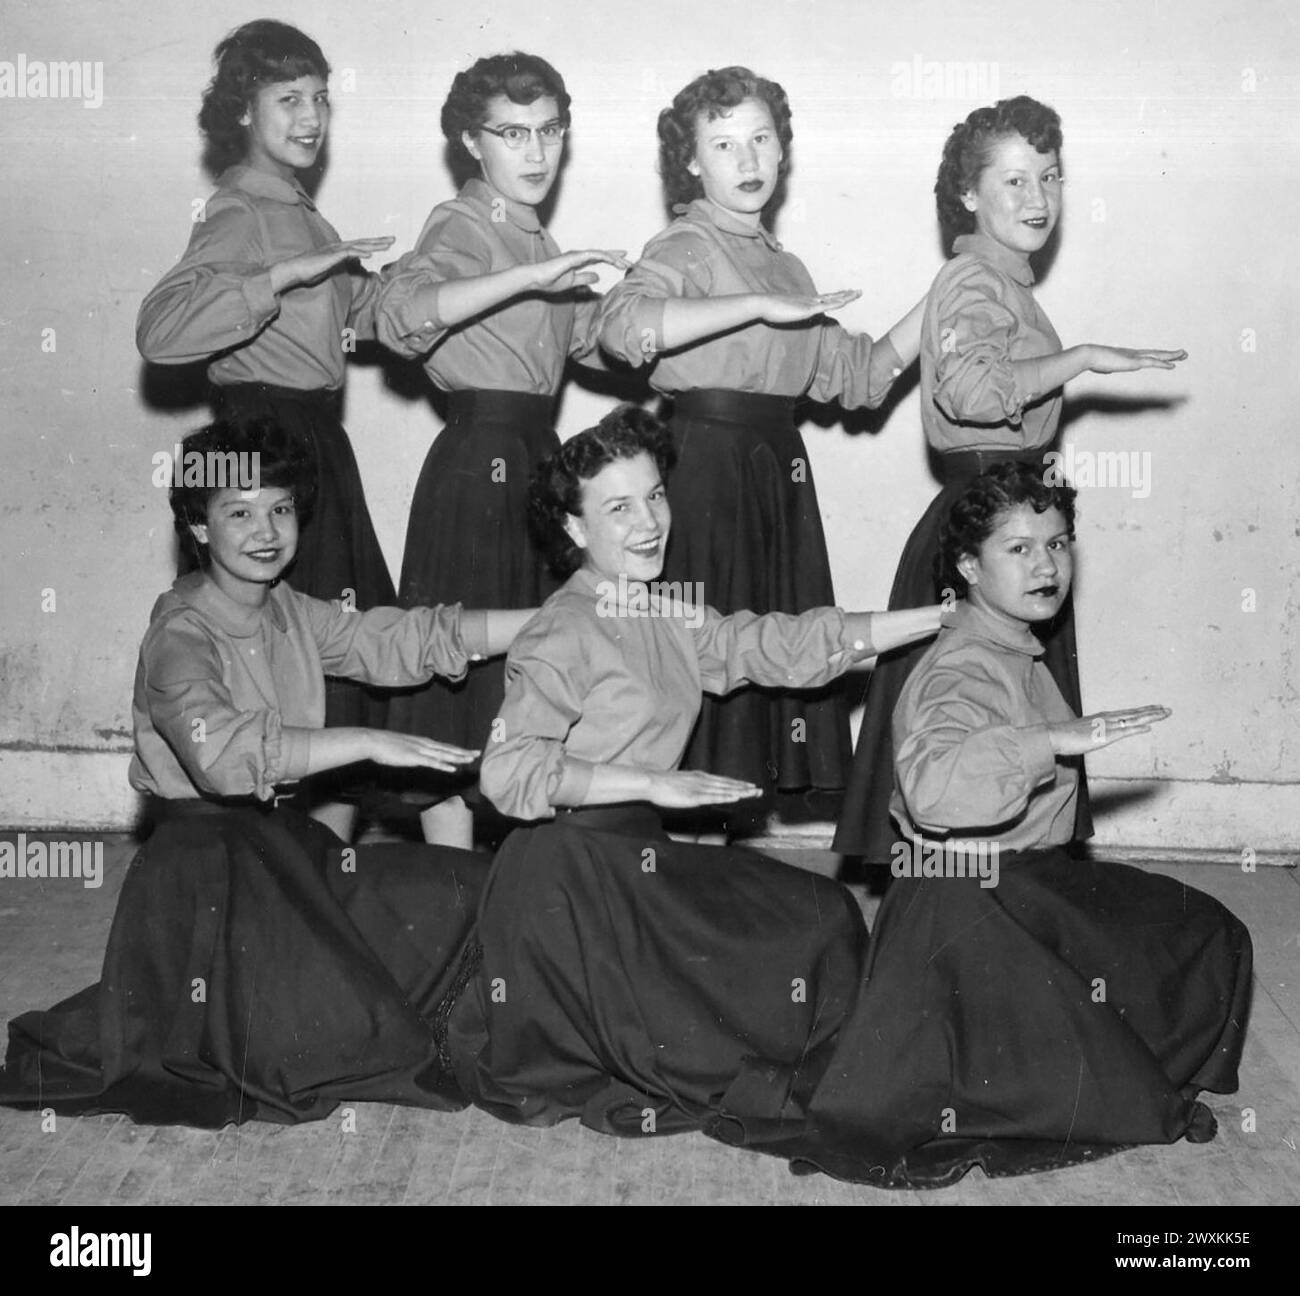 Cheerleaders dans une école du Dakota du Sud posent pour une photo CA. 1940s ou 1950s. Banque D'Images